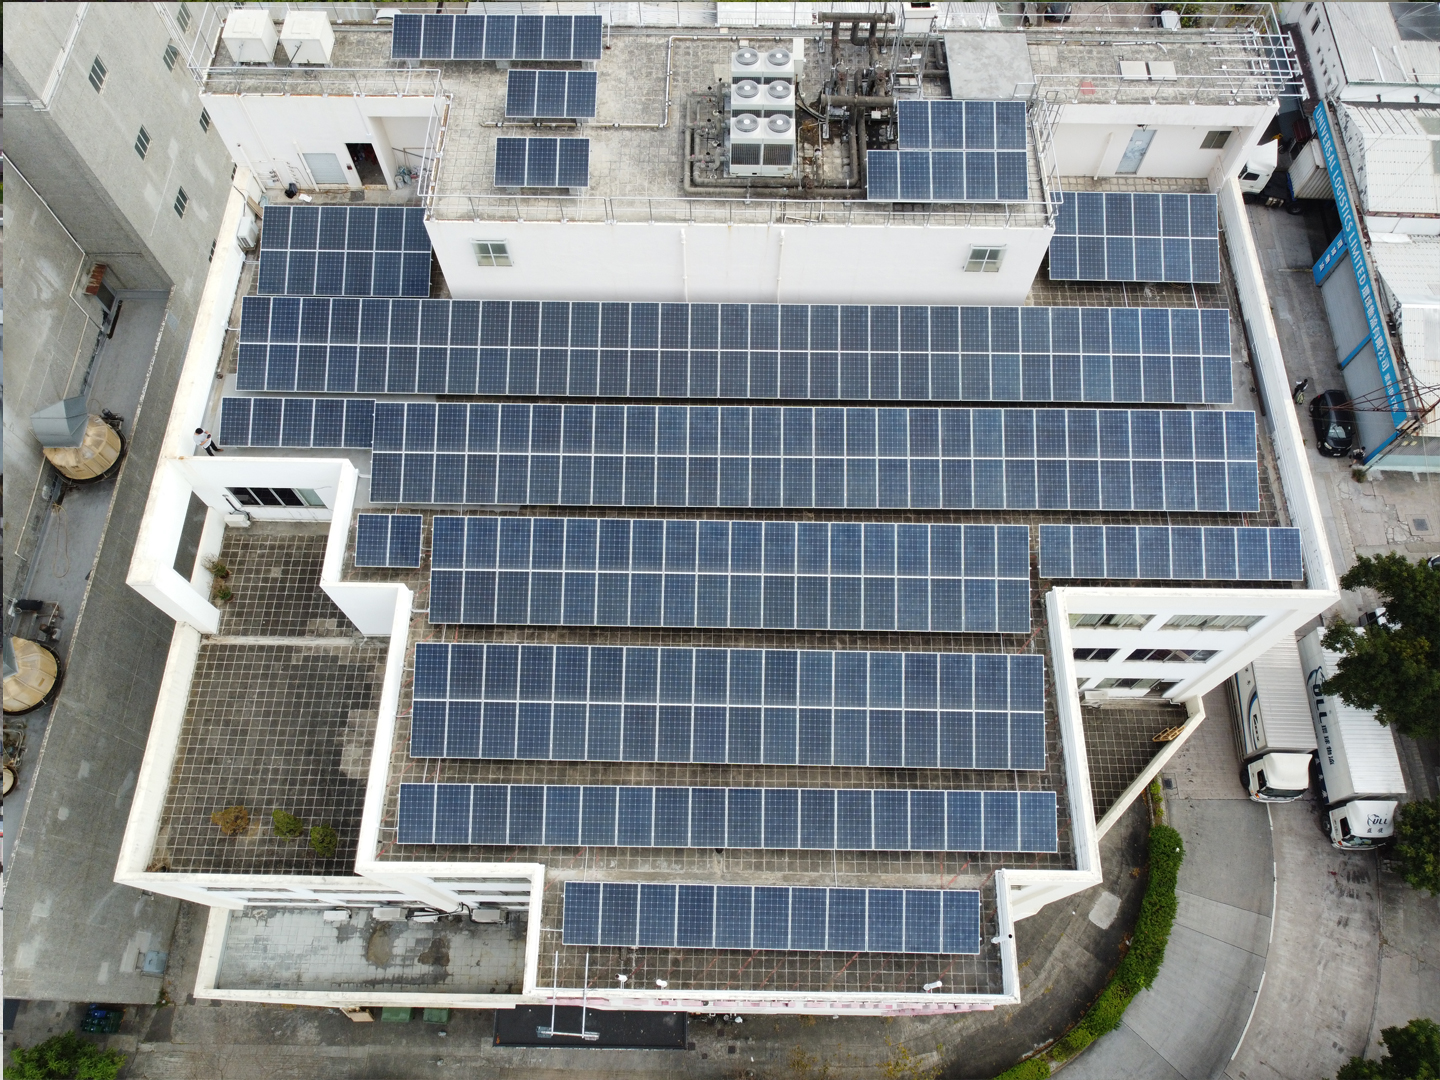 工業建築屋頂上的 100 kW 太陽能係統